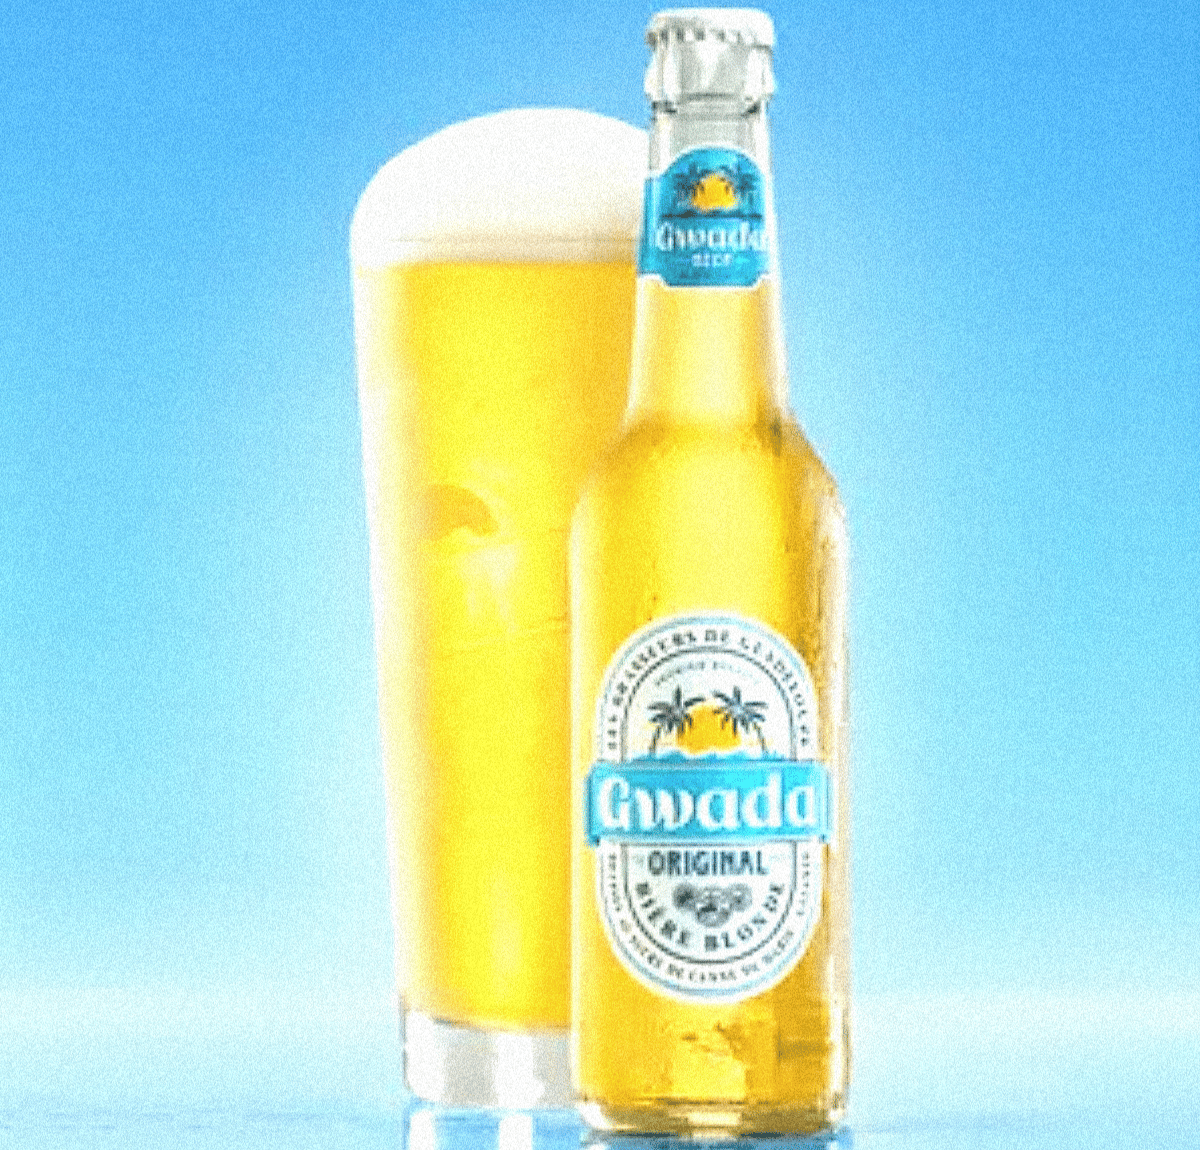 image d'une bière gwada et d'un verre rempli avec une belle mousse généreuse sur le dessus, le tout sur un fond bleu ciel